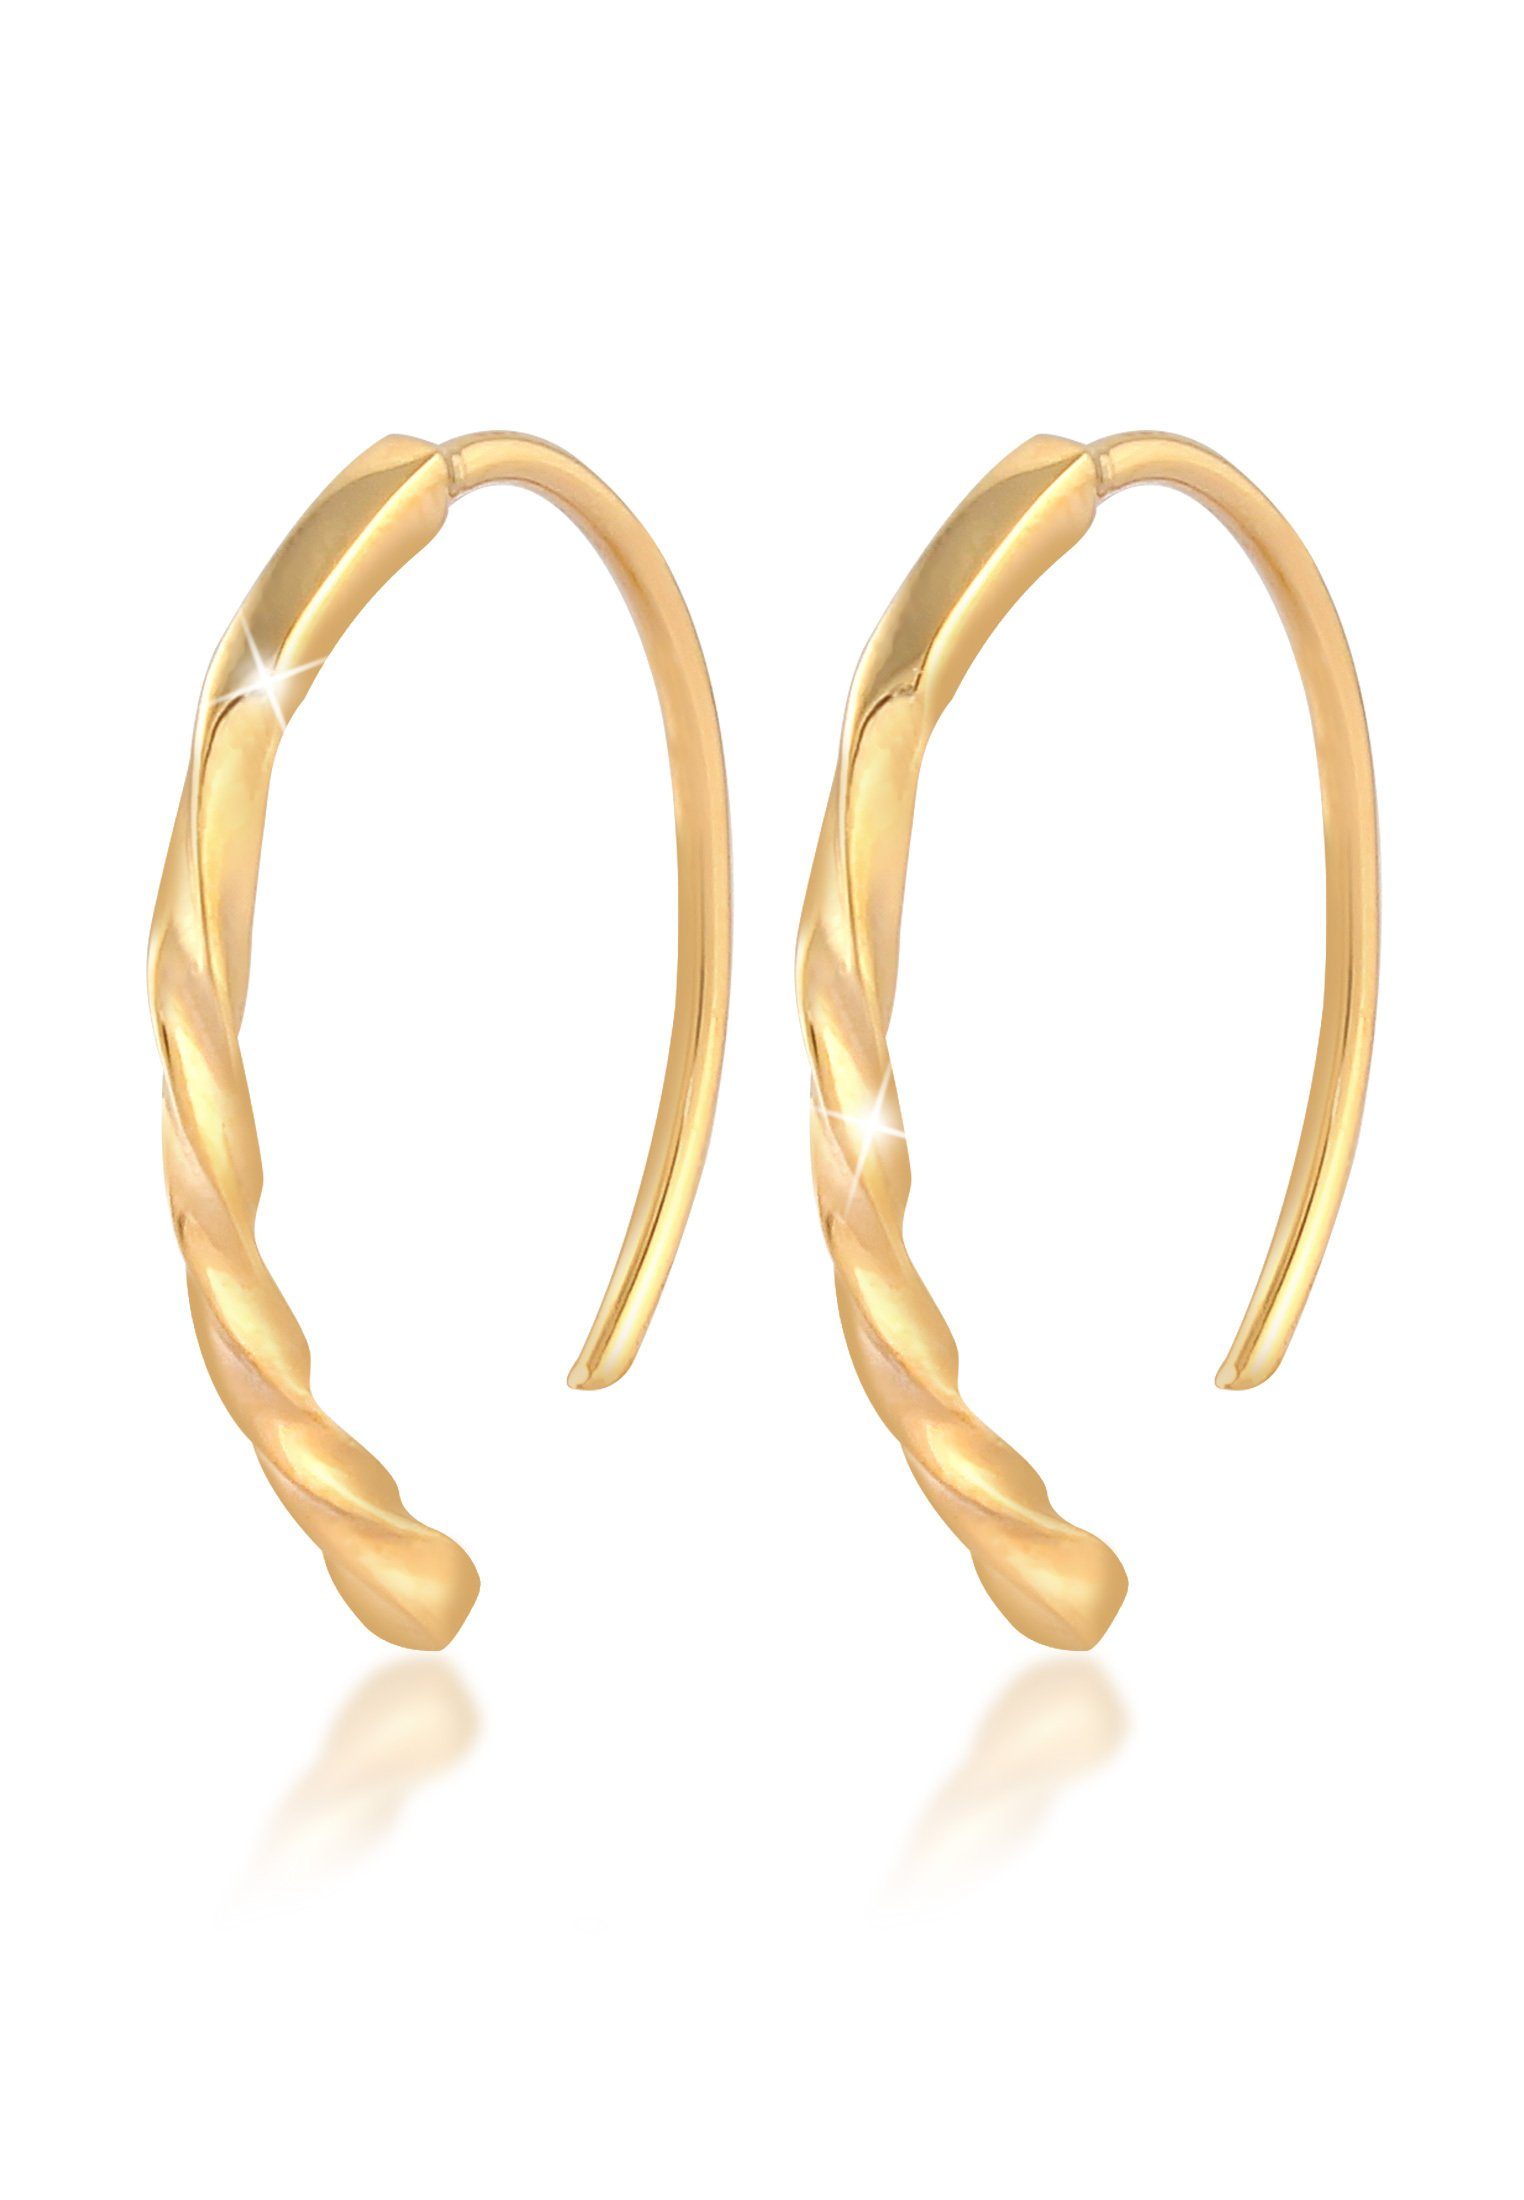 Elli Paar Creolen Creolen Oval Twist Design Offen 925 Silber, Twisted Gold | Creolen